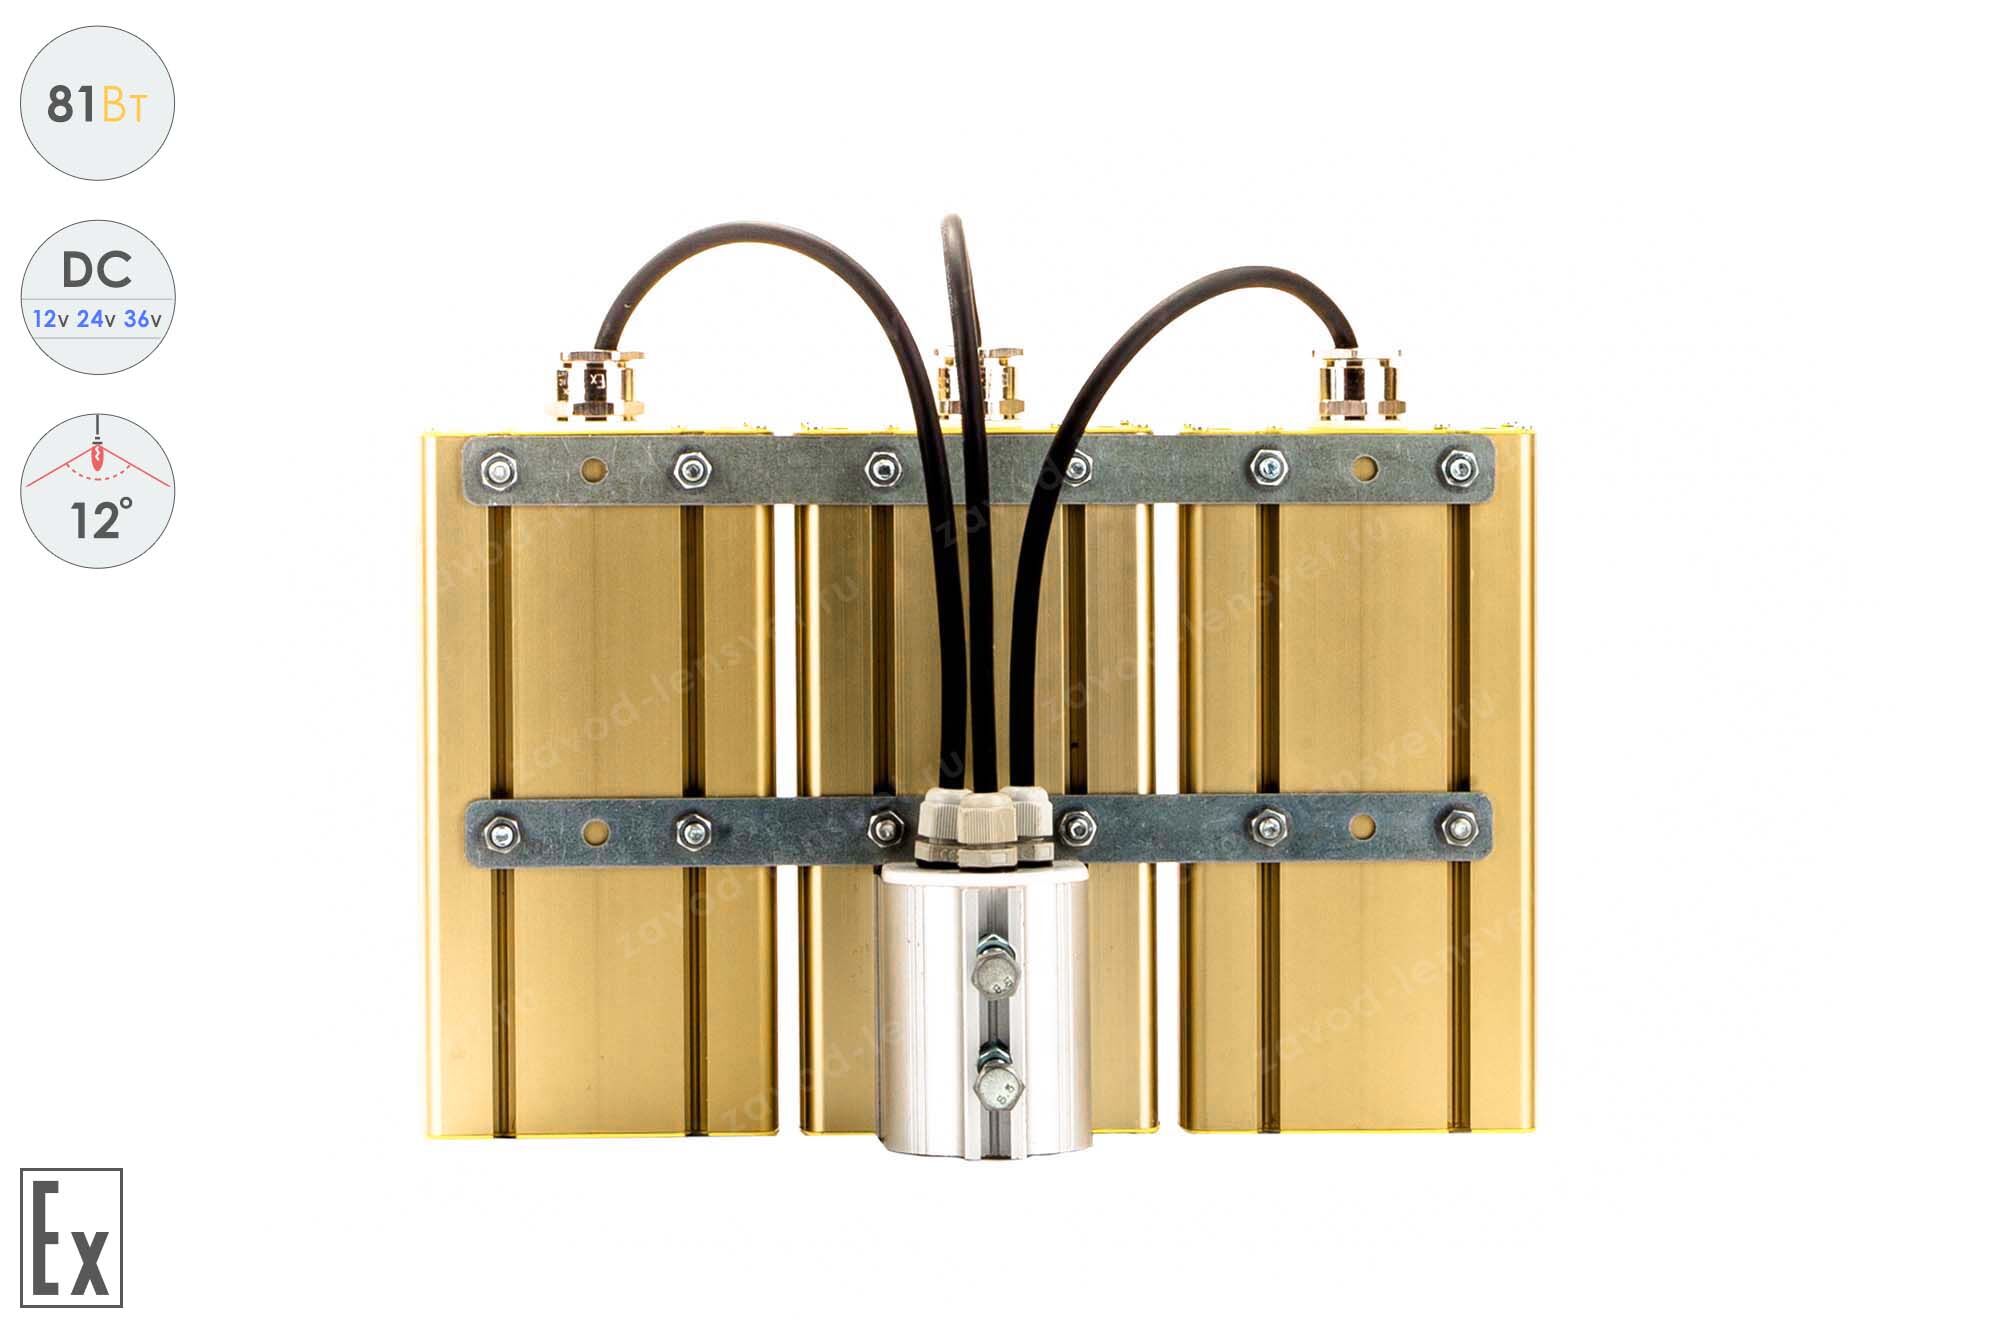 Низковольтный светодиодный светильник Прожектор Взрывозащищенный GOLD, консоль K-3 , 81 Вт, 12° 4